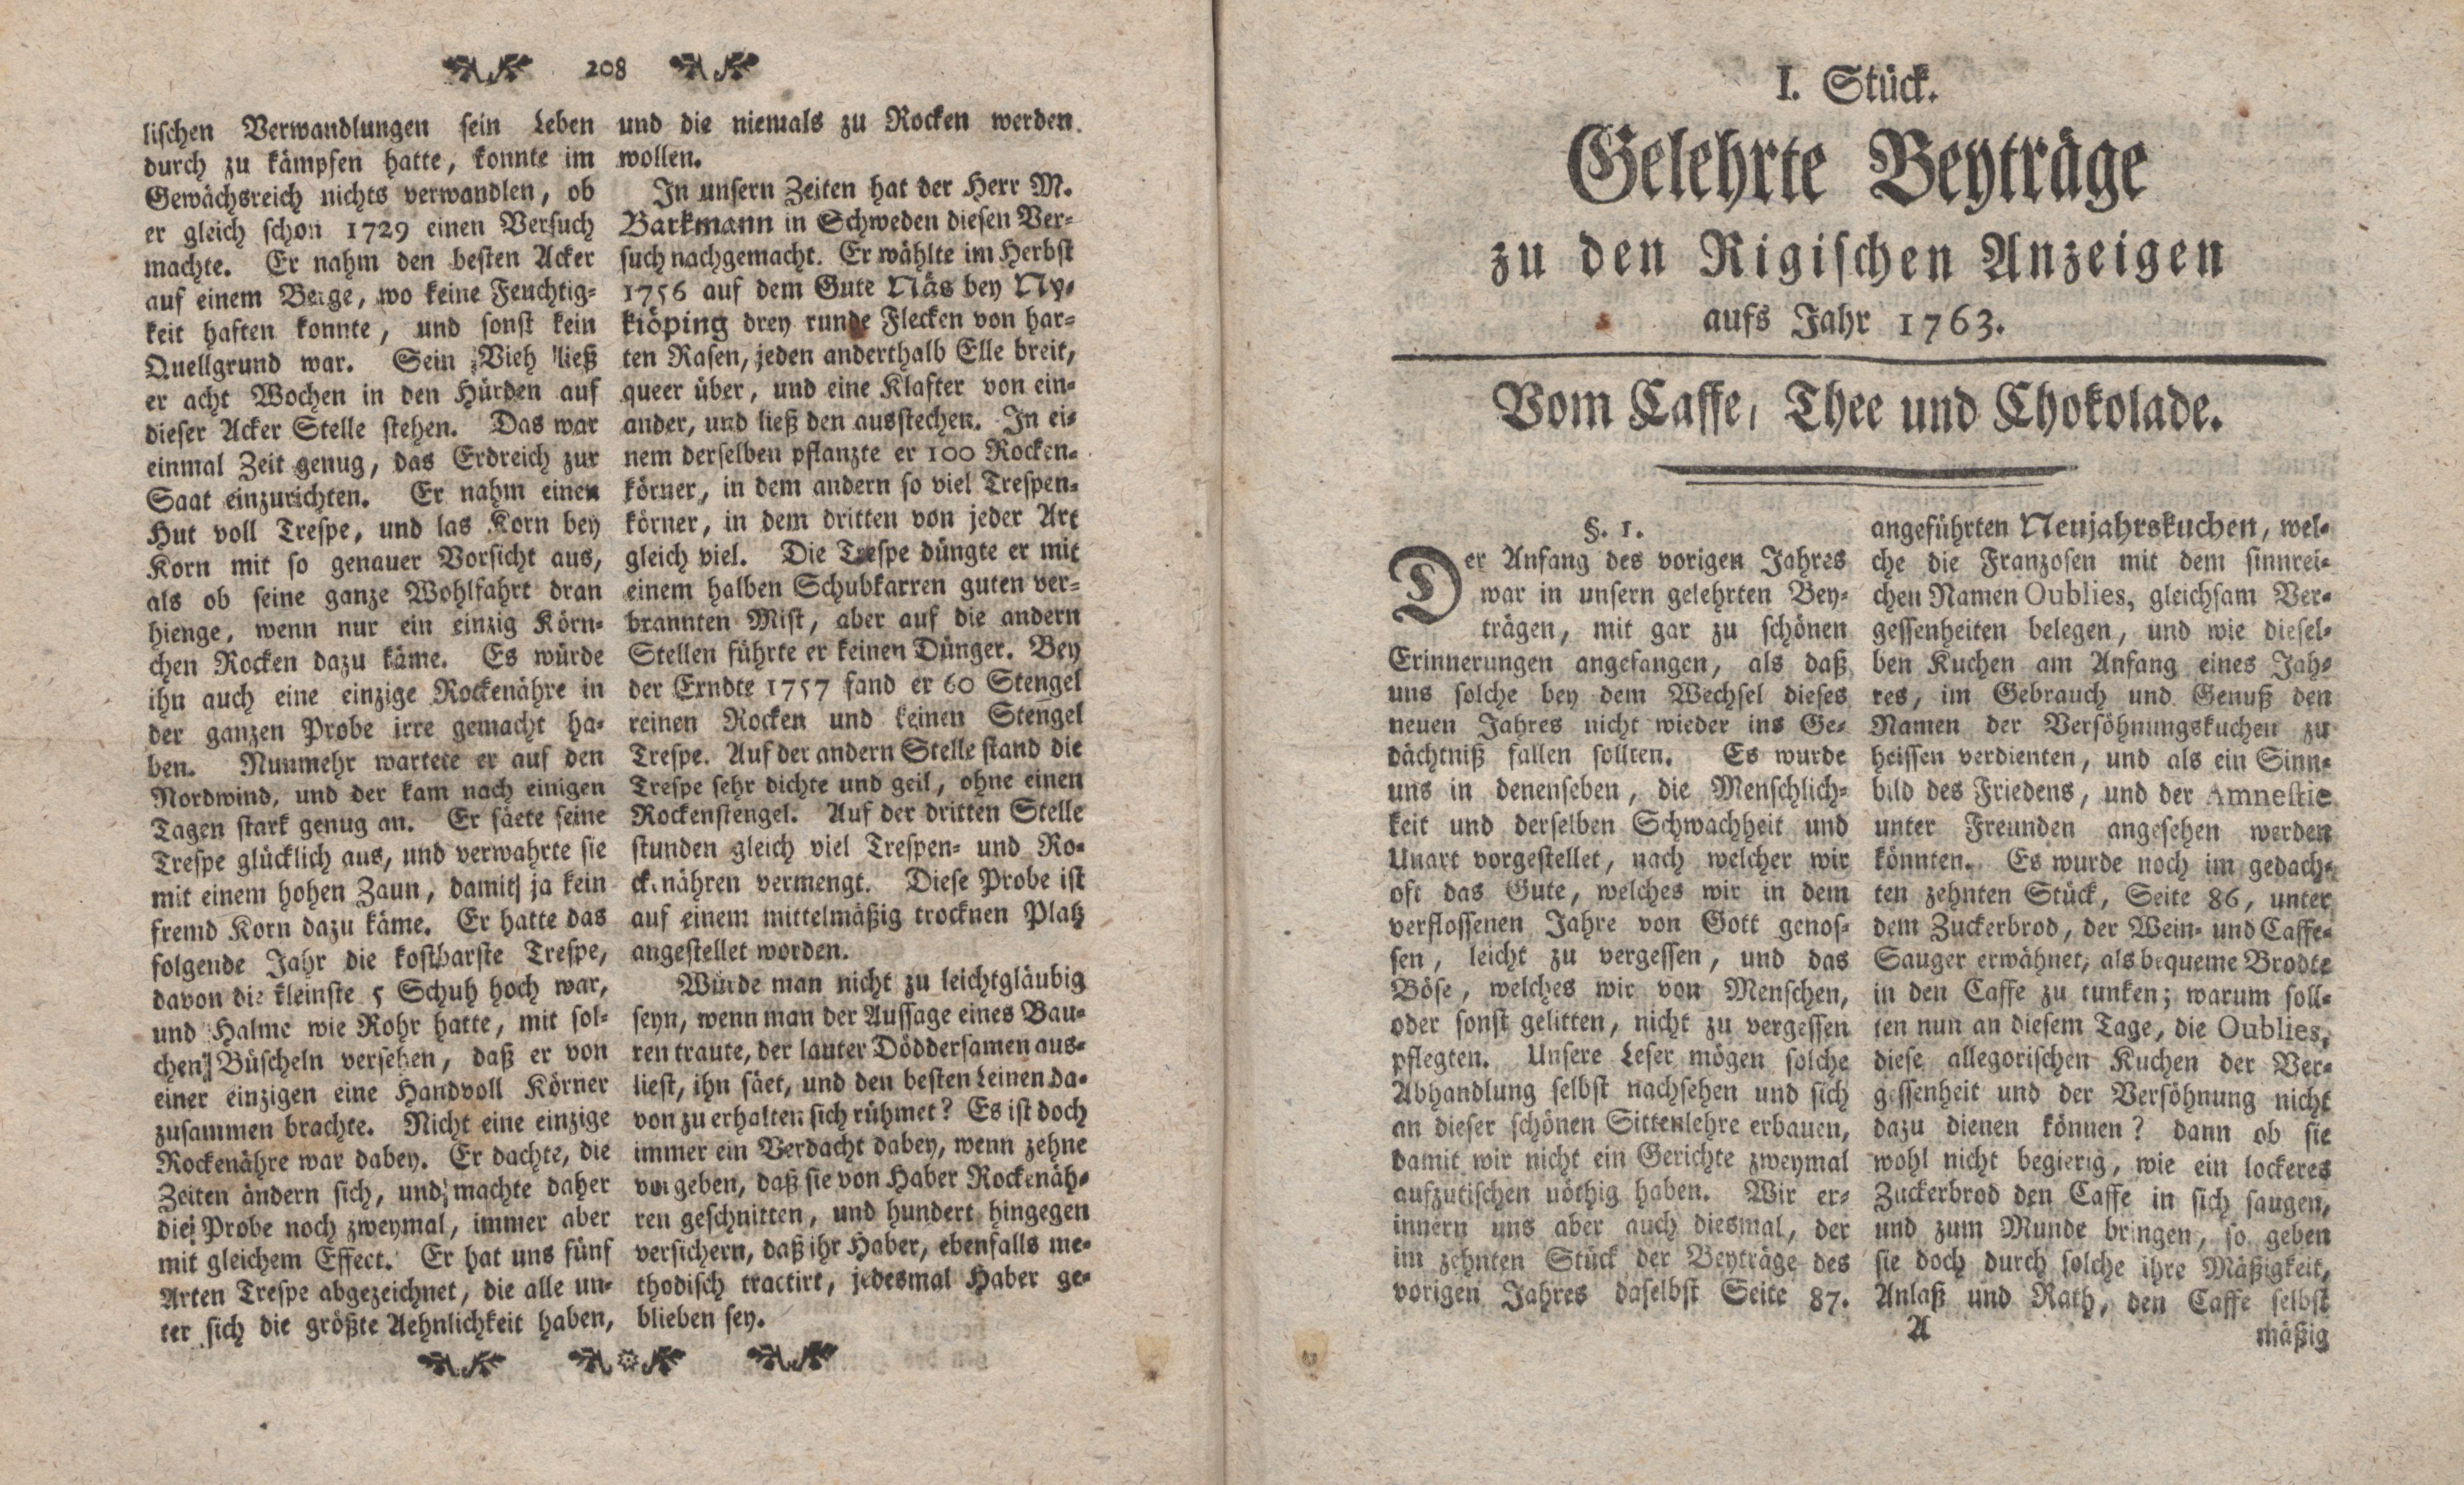 Gelehrte Beyträge zu den Rigischen Anzeigen 1763 (1763) | 1. (1) Титульный лист